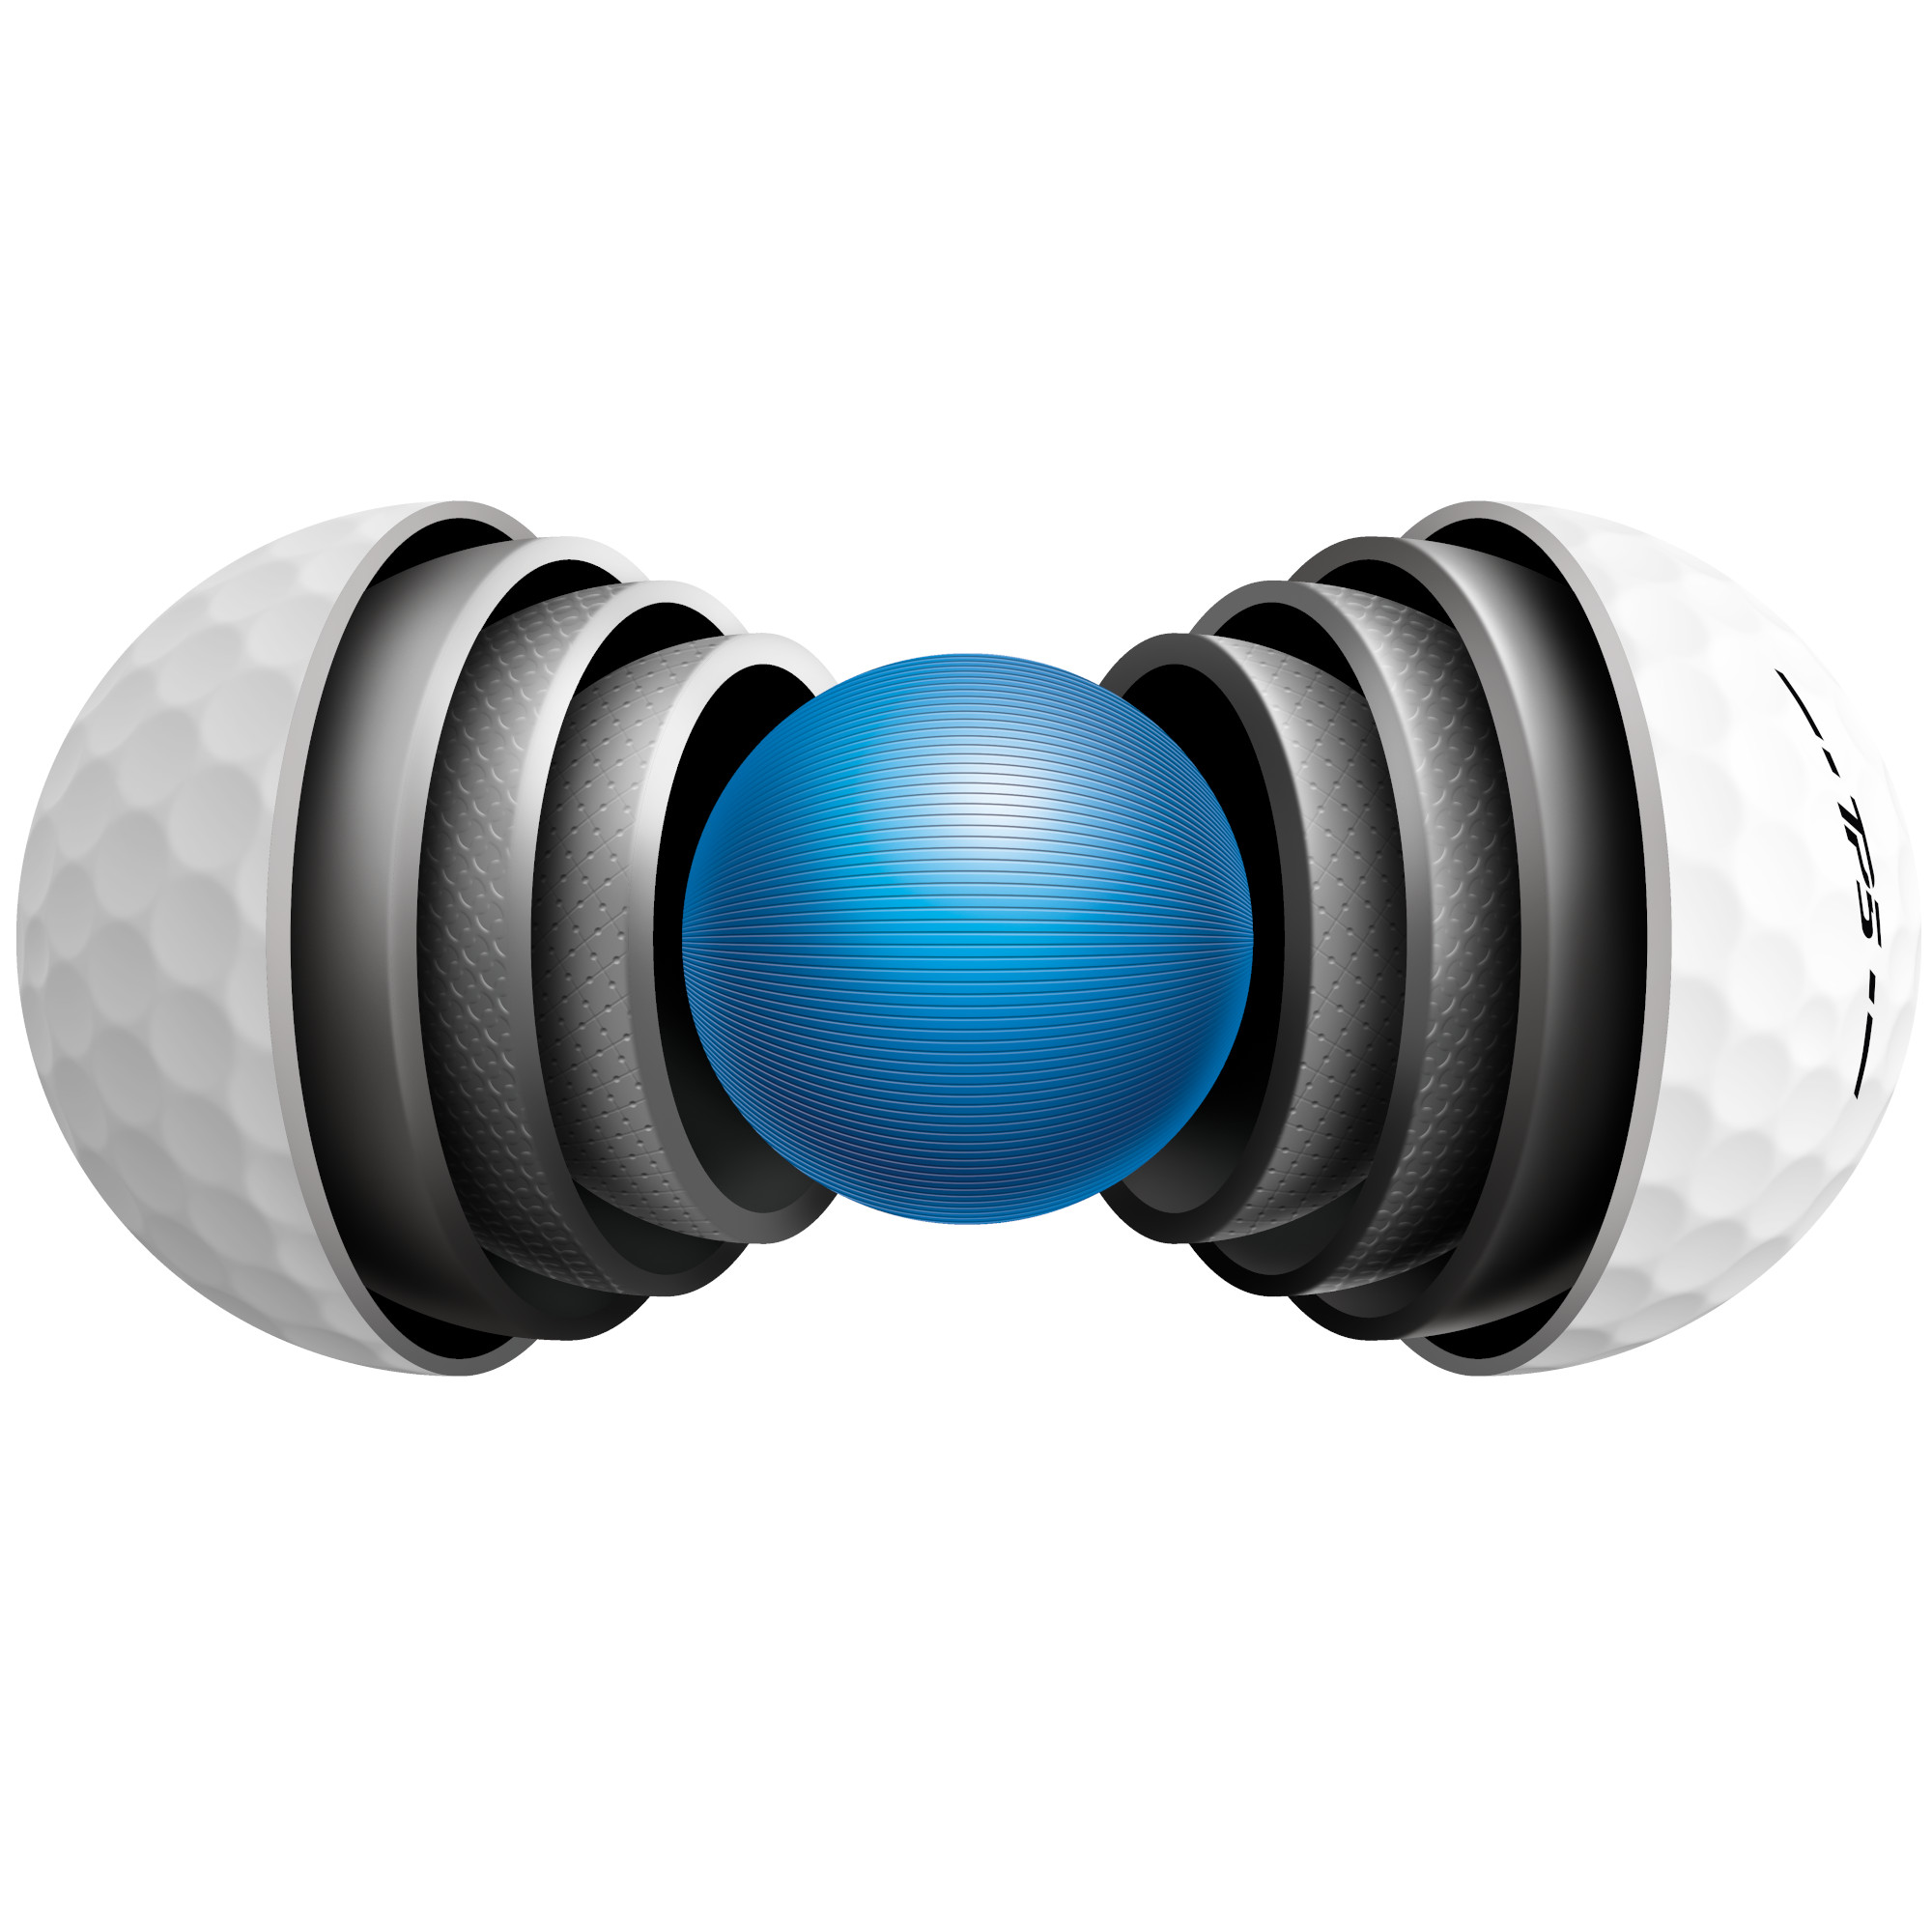 TaylorMade TP5 Golfbälle bedruckt, weiss (VPE à 12 Bälle)